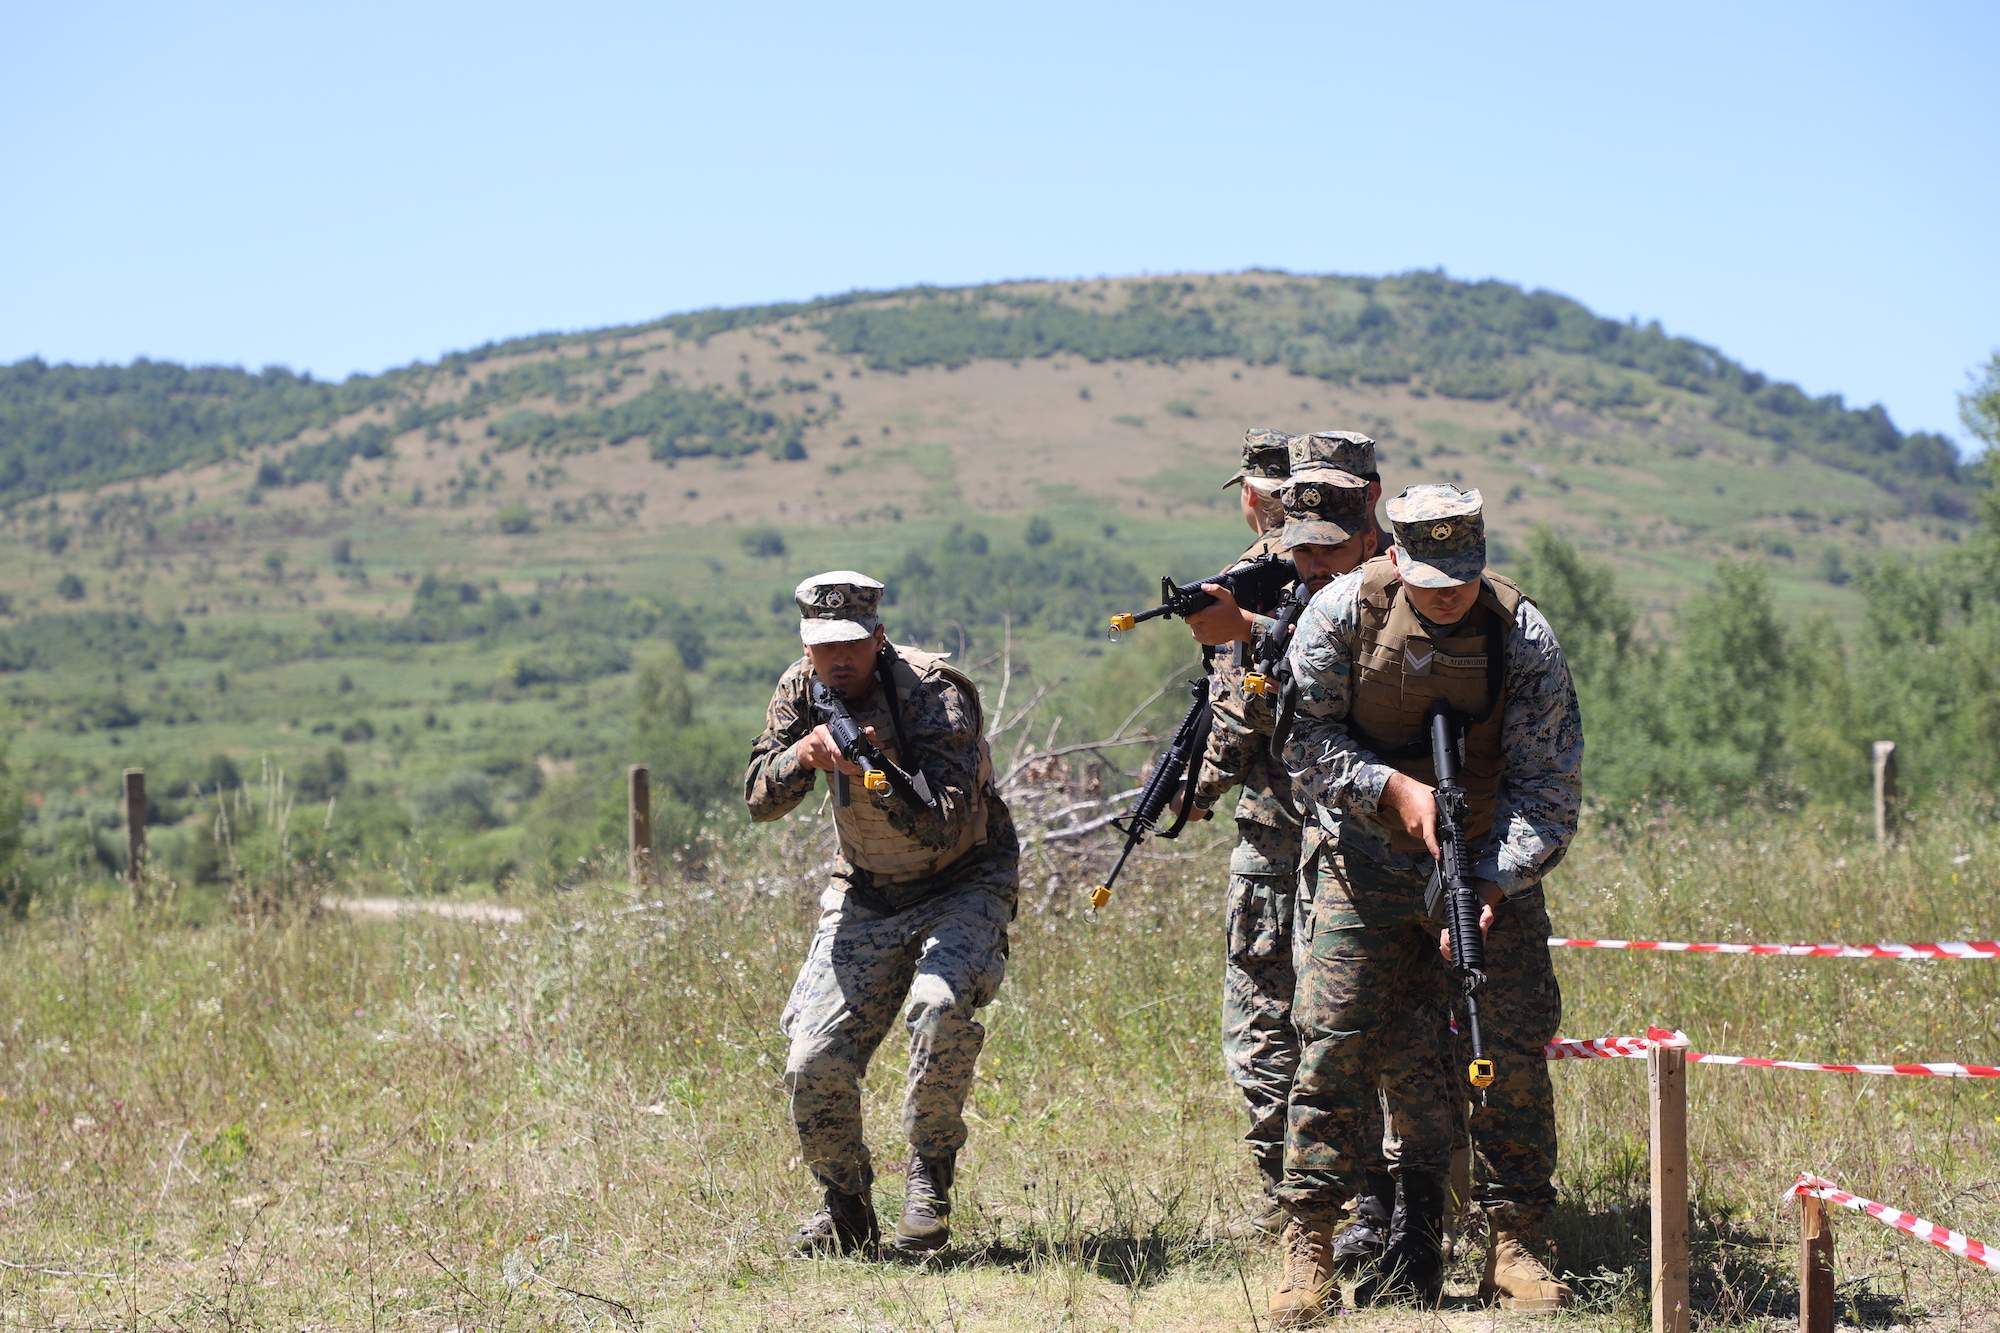 IMG_3382.JPG - Oružane snage su najbolji i najorganizovaniji dio bosanskohercegovačkog društva